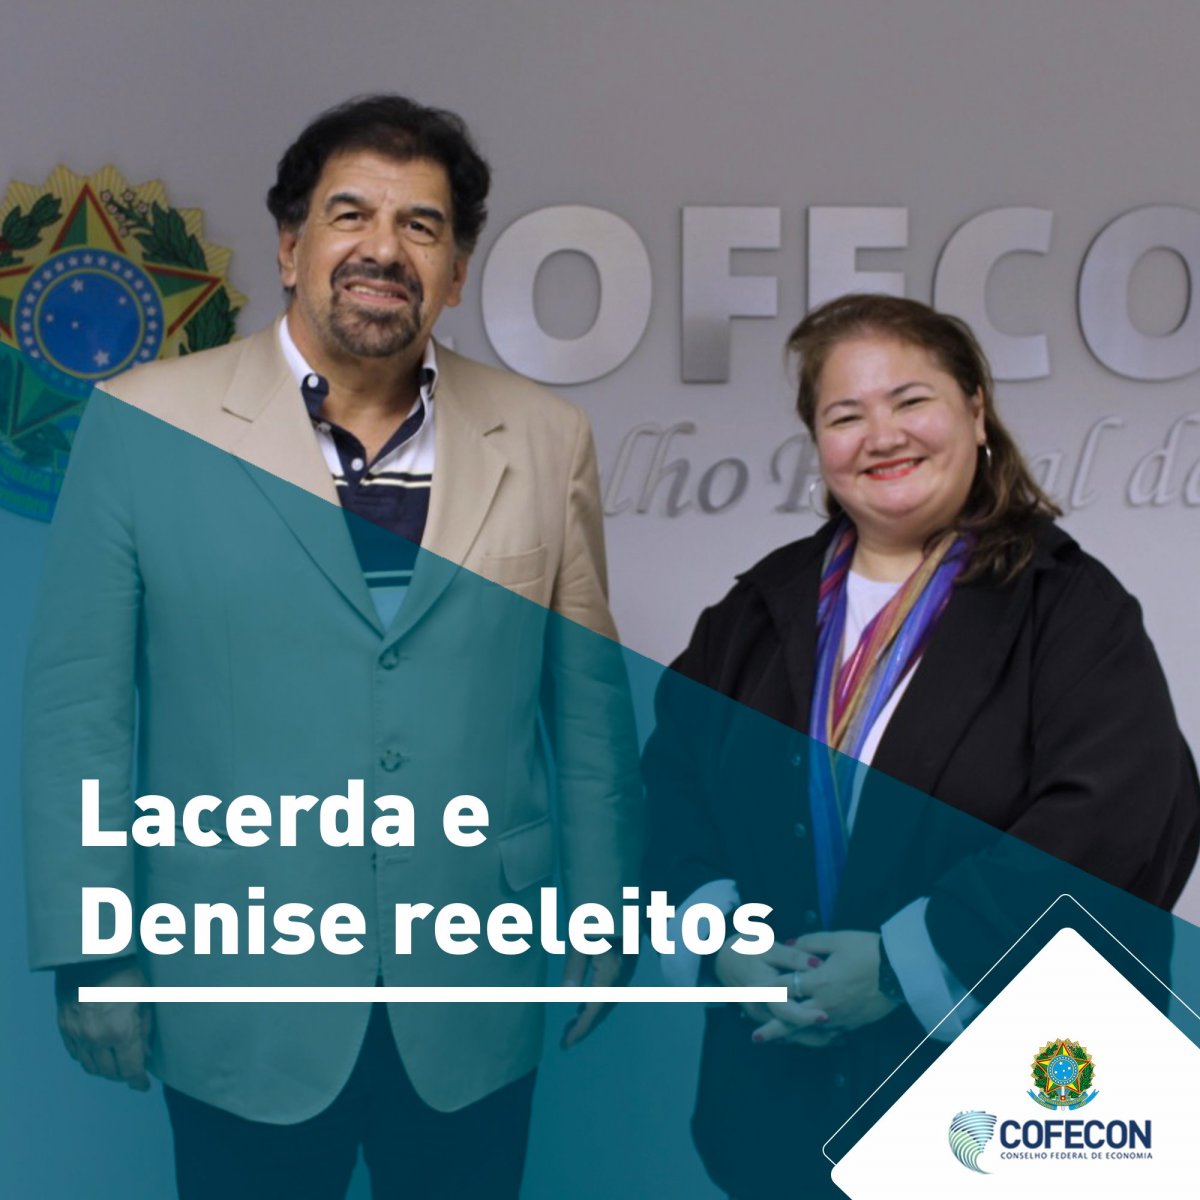 Antonio Corrêa de Lacerda e Denise Kassama são reconduzidos à presidência do Cofecon - Corecon/SC